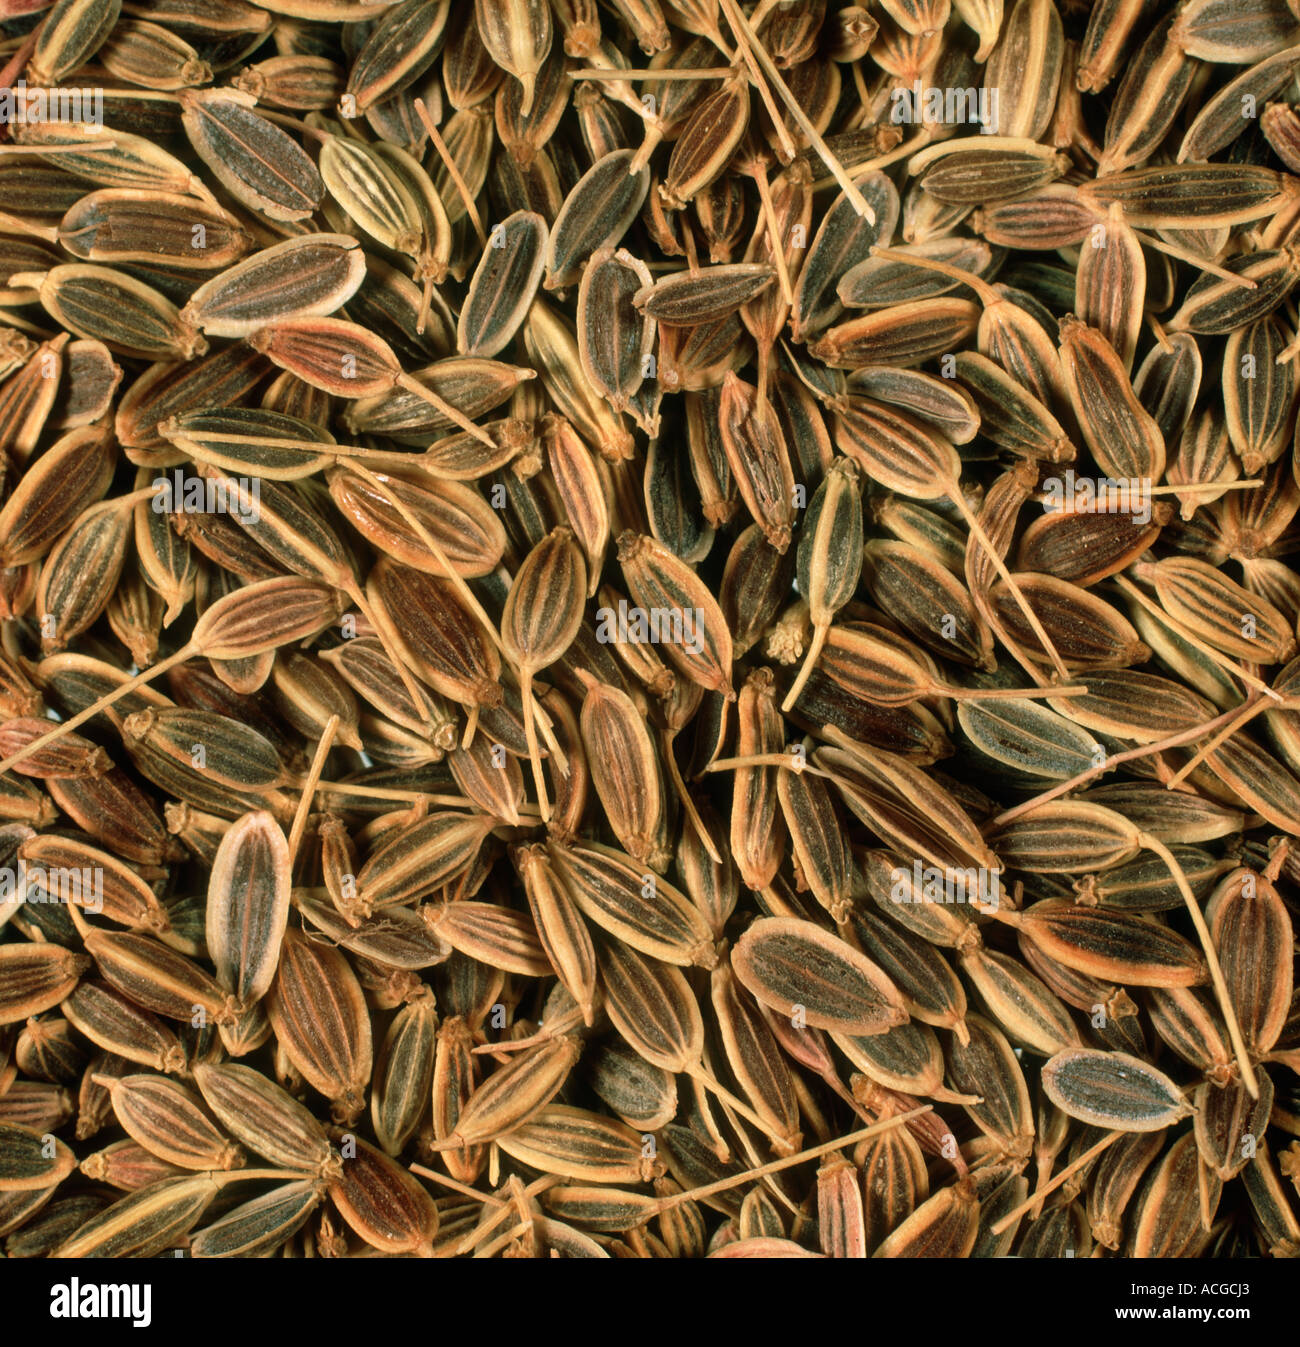 Eneldo semillas compradas en una tienda de comida de salud o para crecer Foto de stock